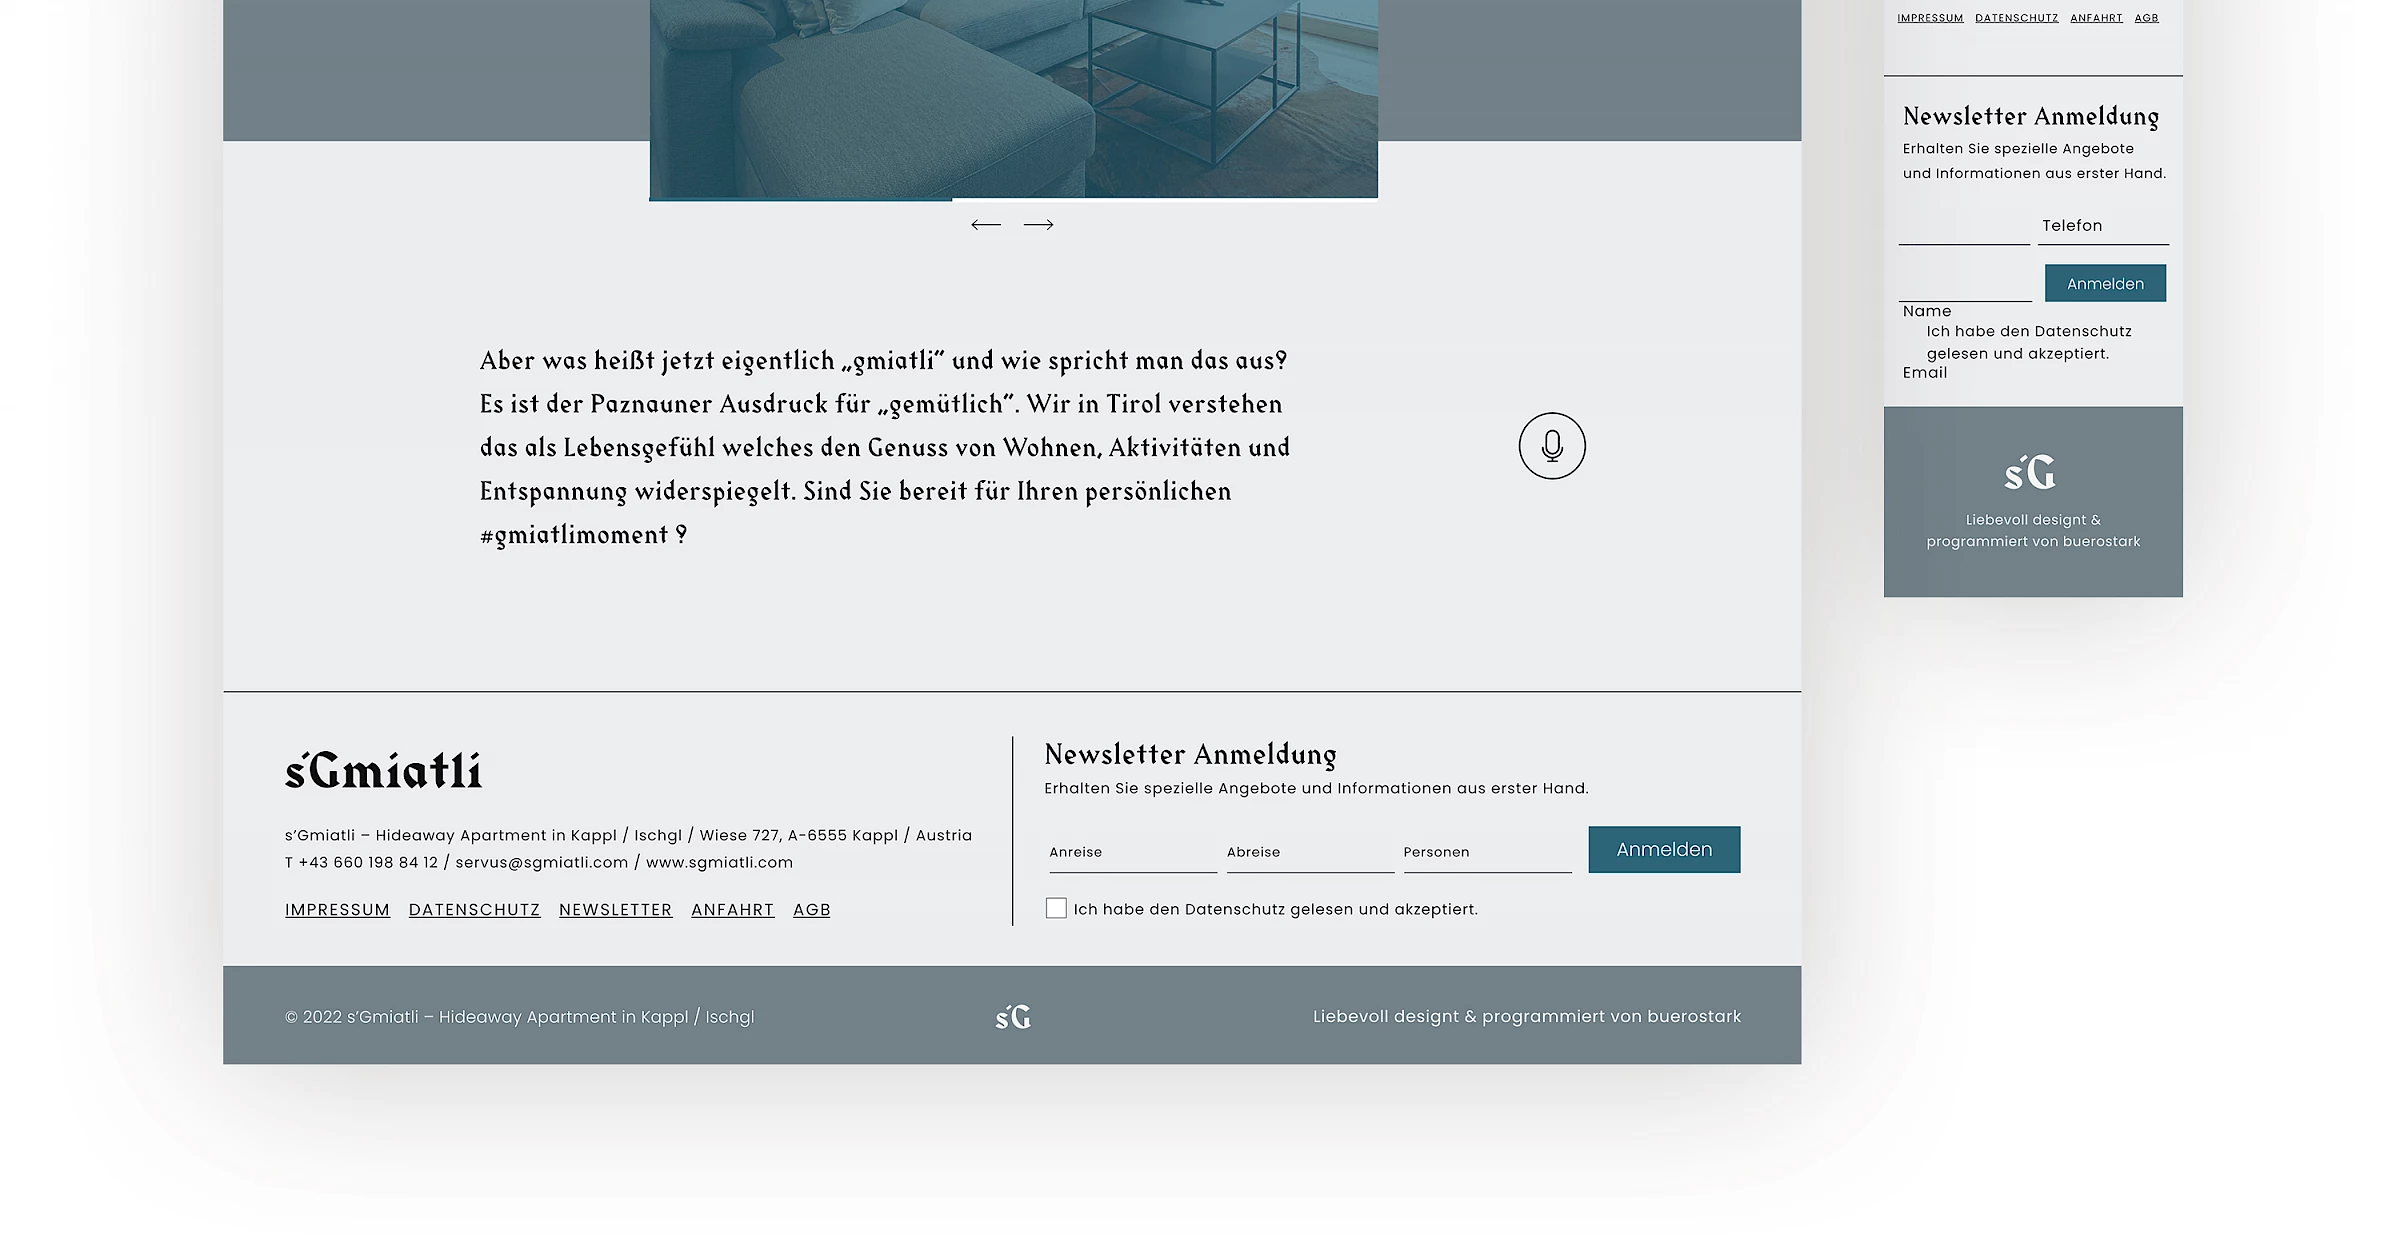 Webdesign der Website sgmiatli.com, designed und programmiert von Buerostark Werbeagentur in Telfs